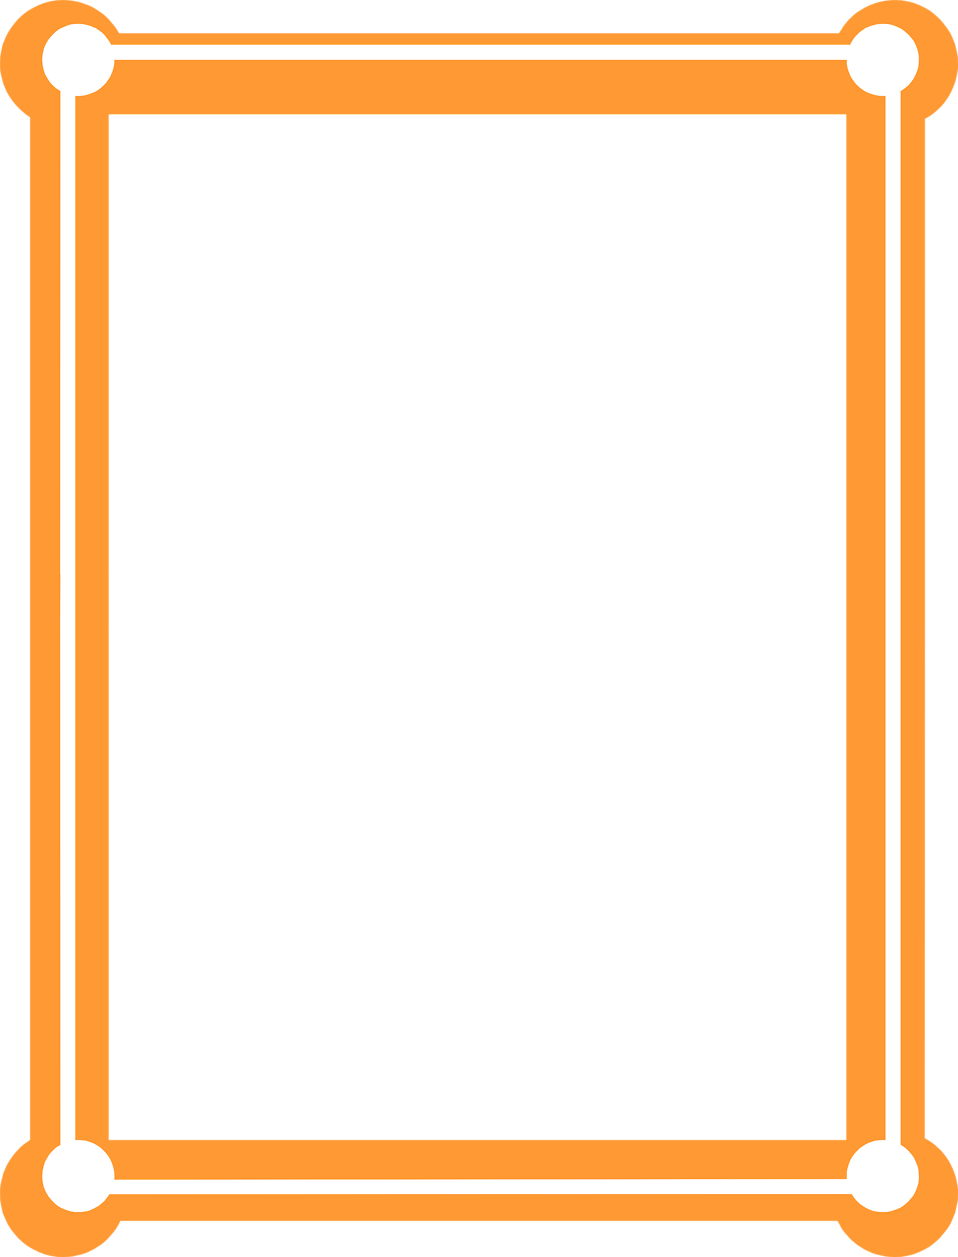 Orange Border Frame Picture PNG Image